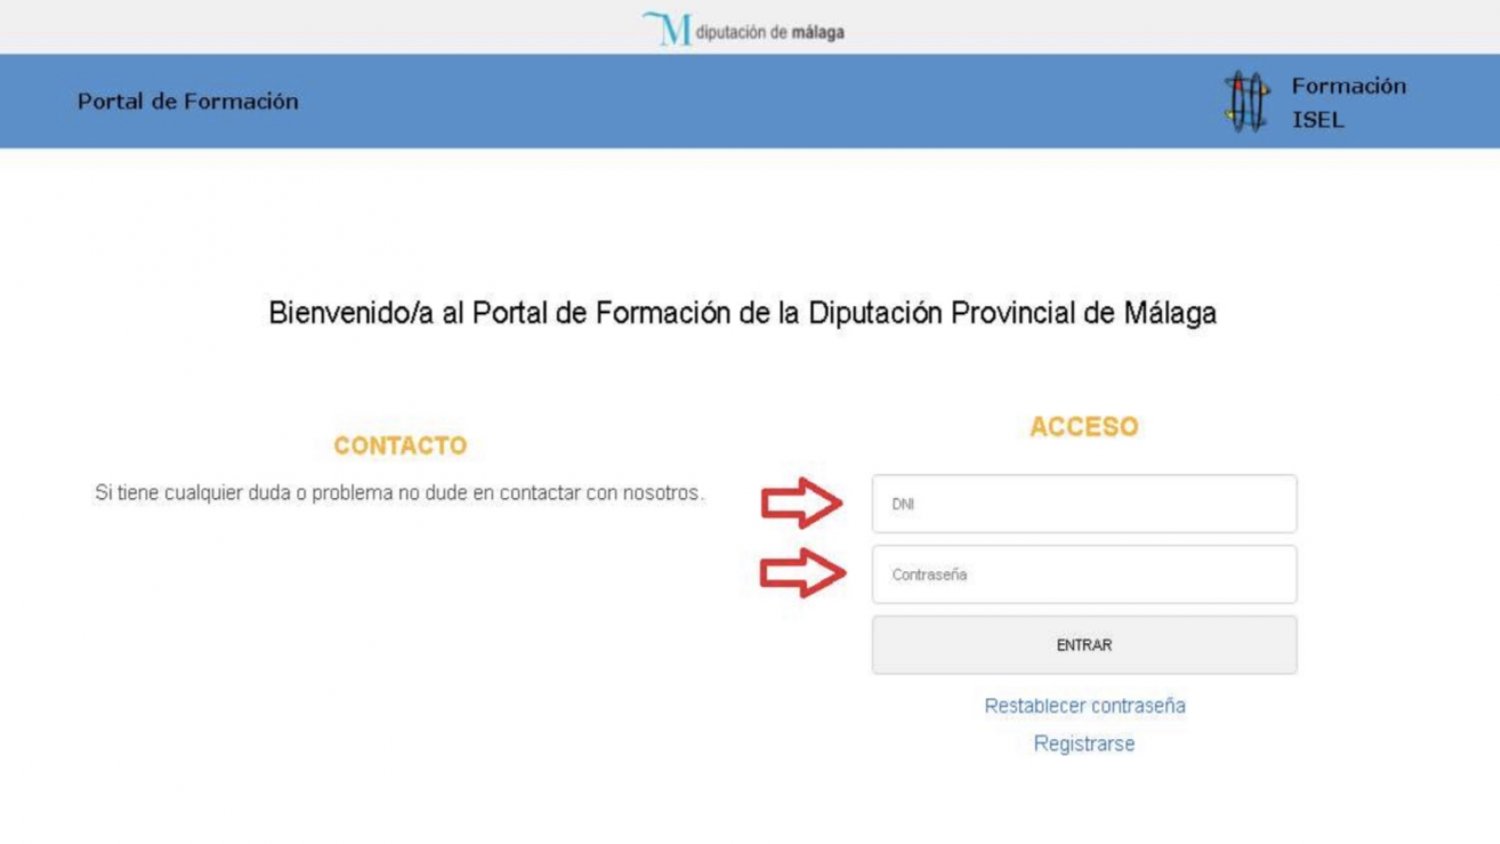 La Diputación de Málaga lanza un nuevo portal de formación on line dirigido a sus empleados